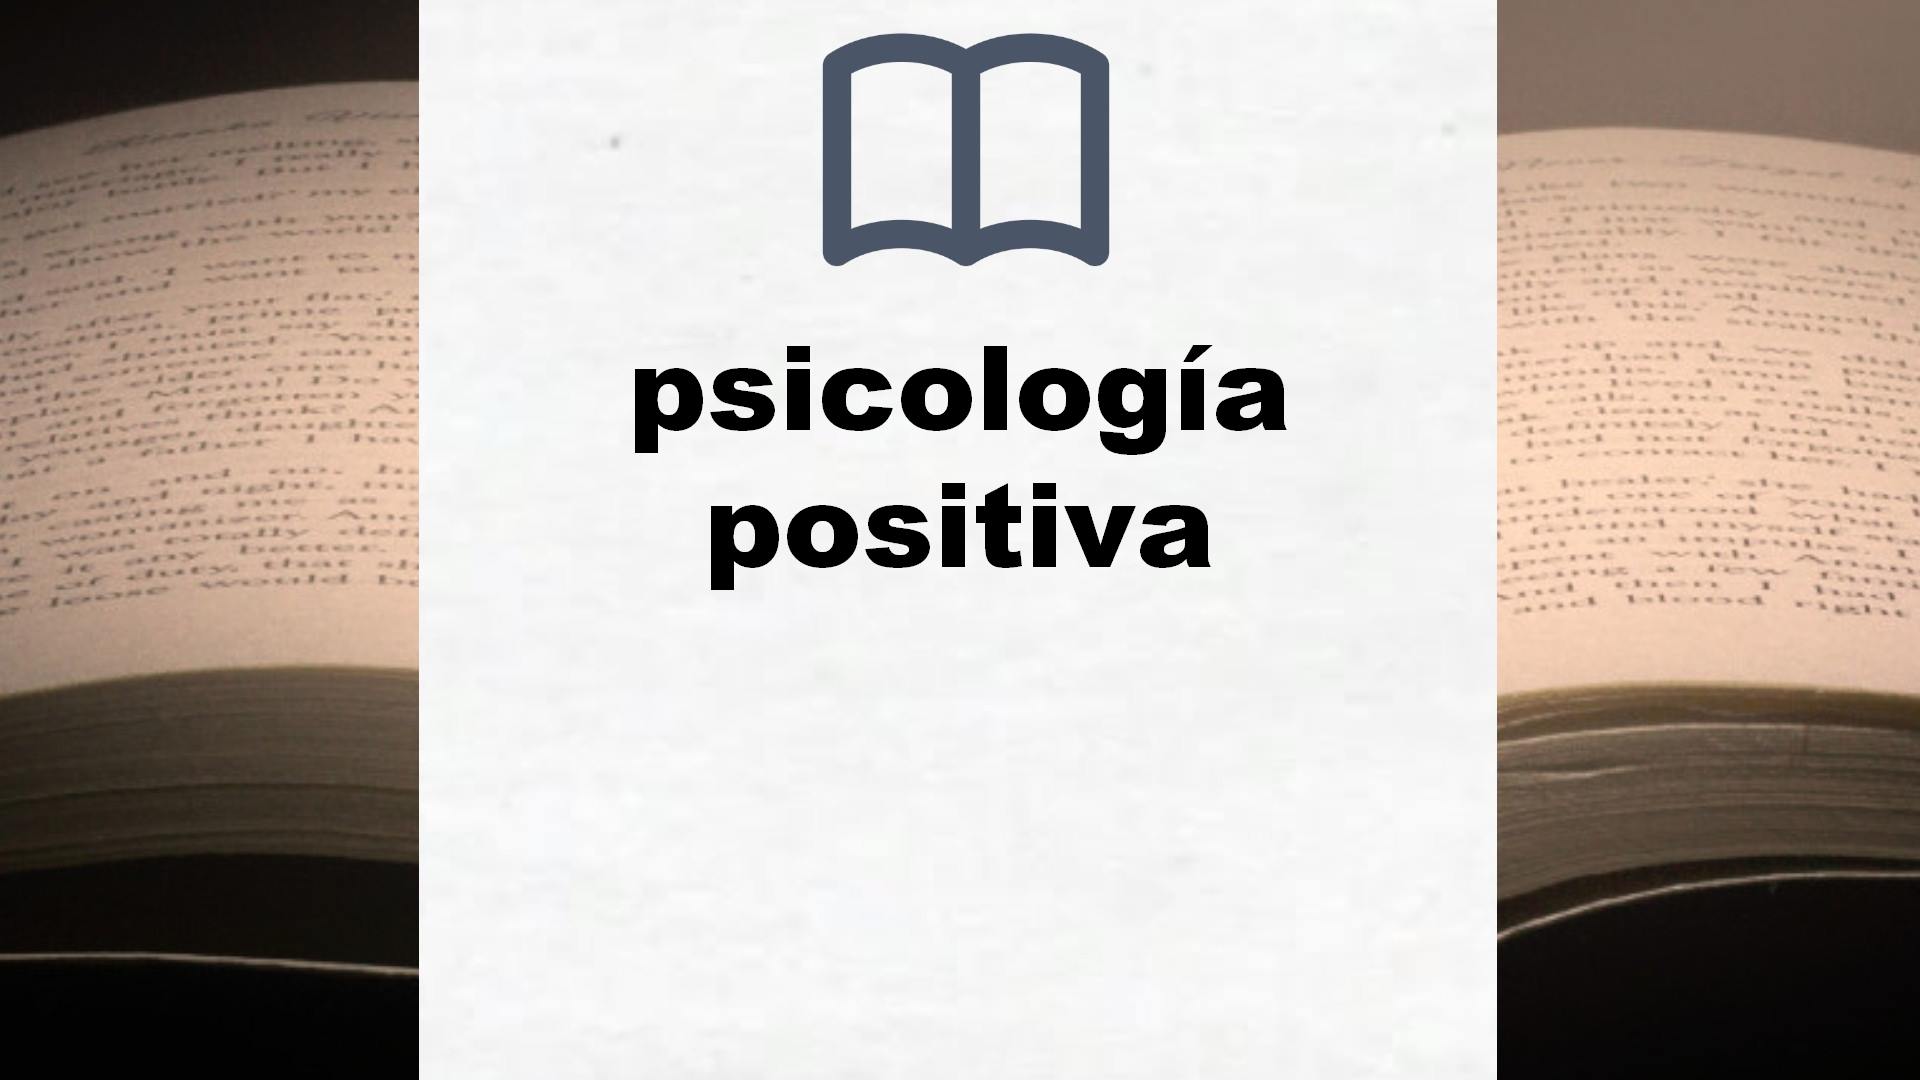 Libros sobre psicología positiva